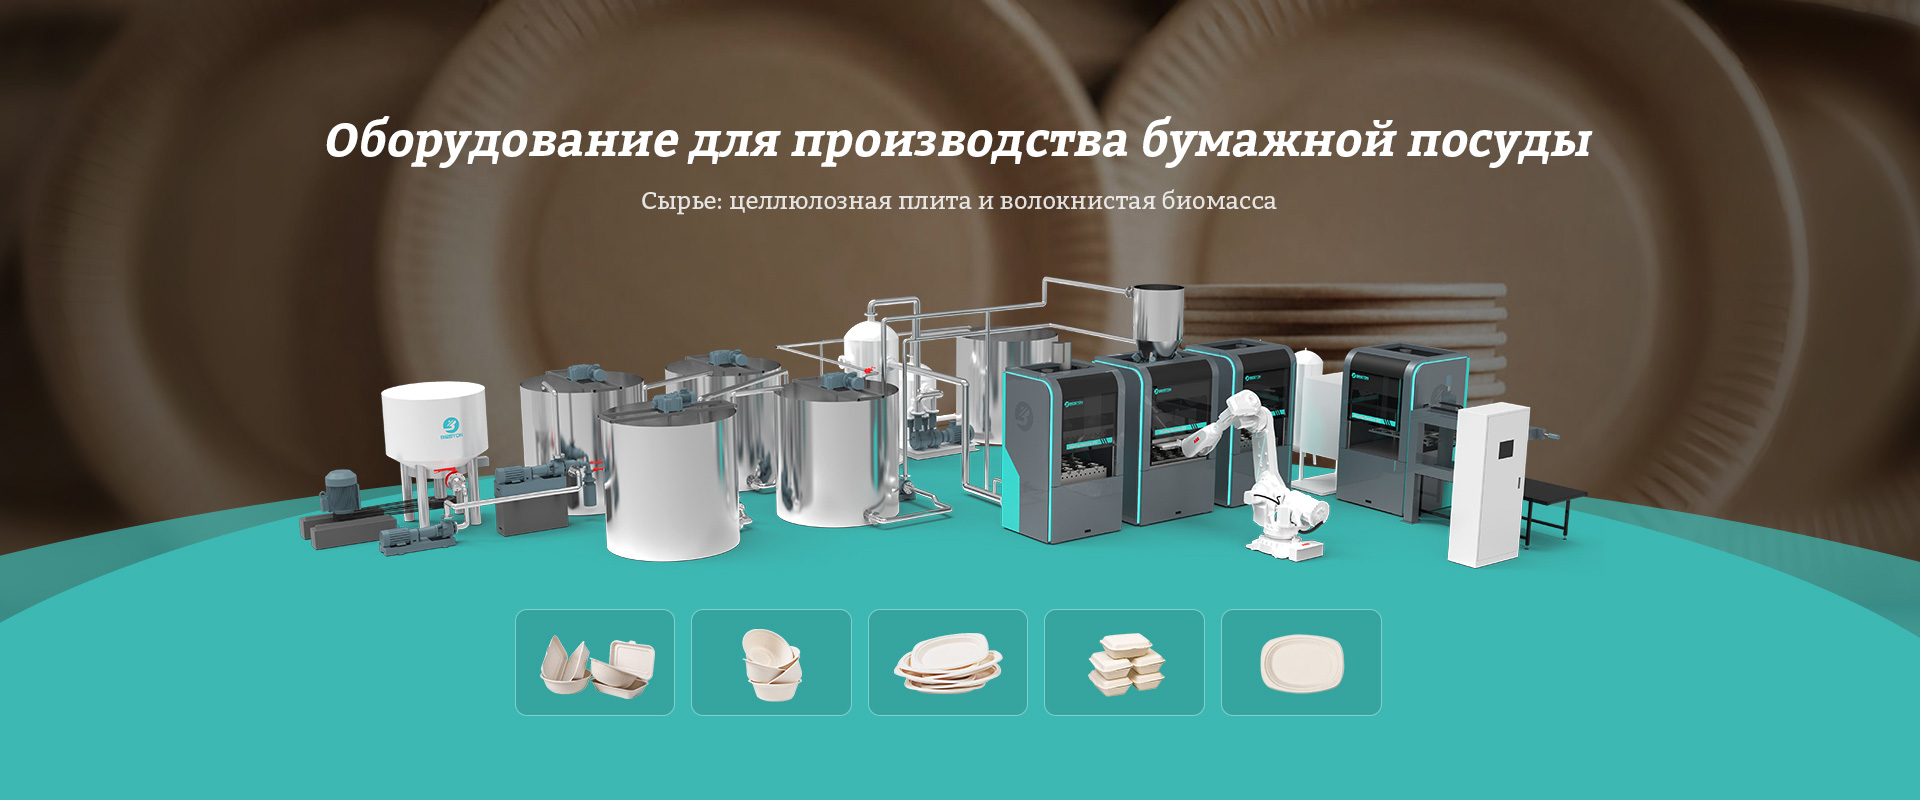 Оборудование для производства биоразлагаемой посуды